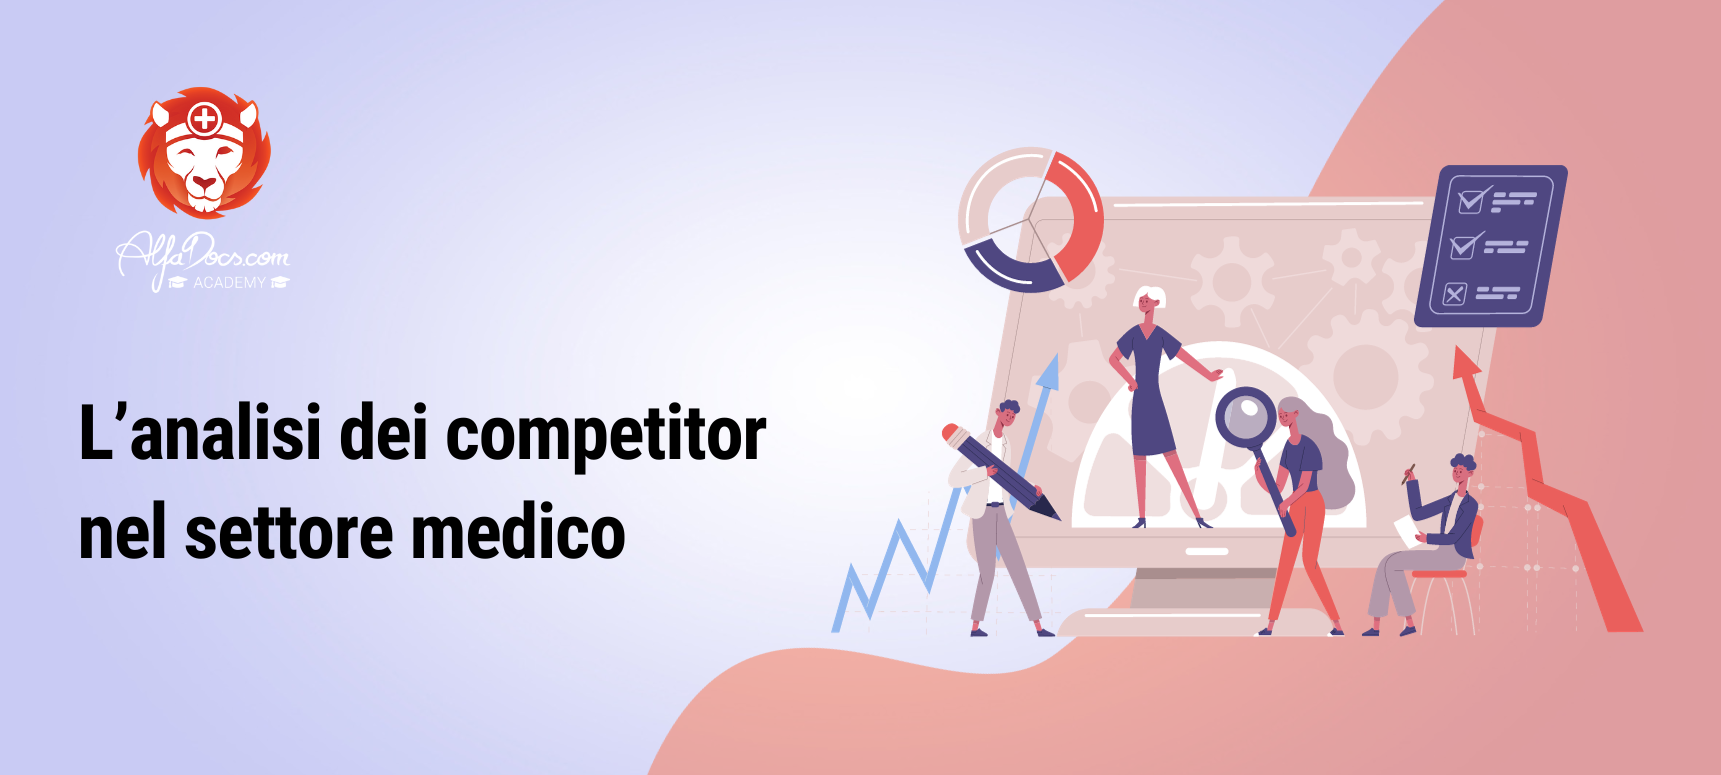 L'analisi dei competitor nel settore medico